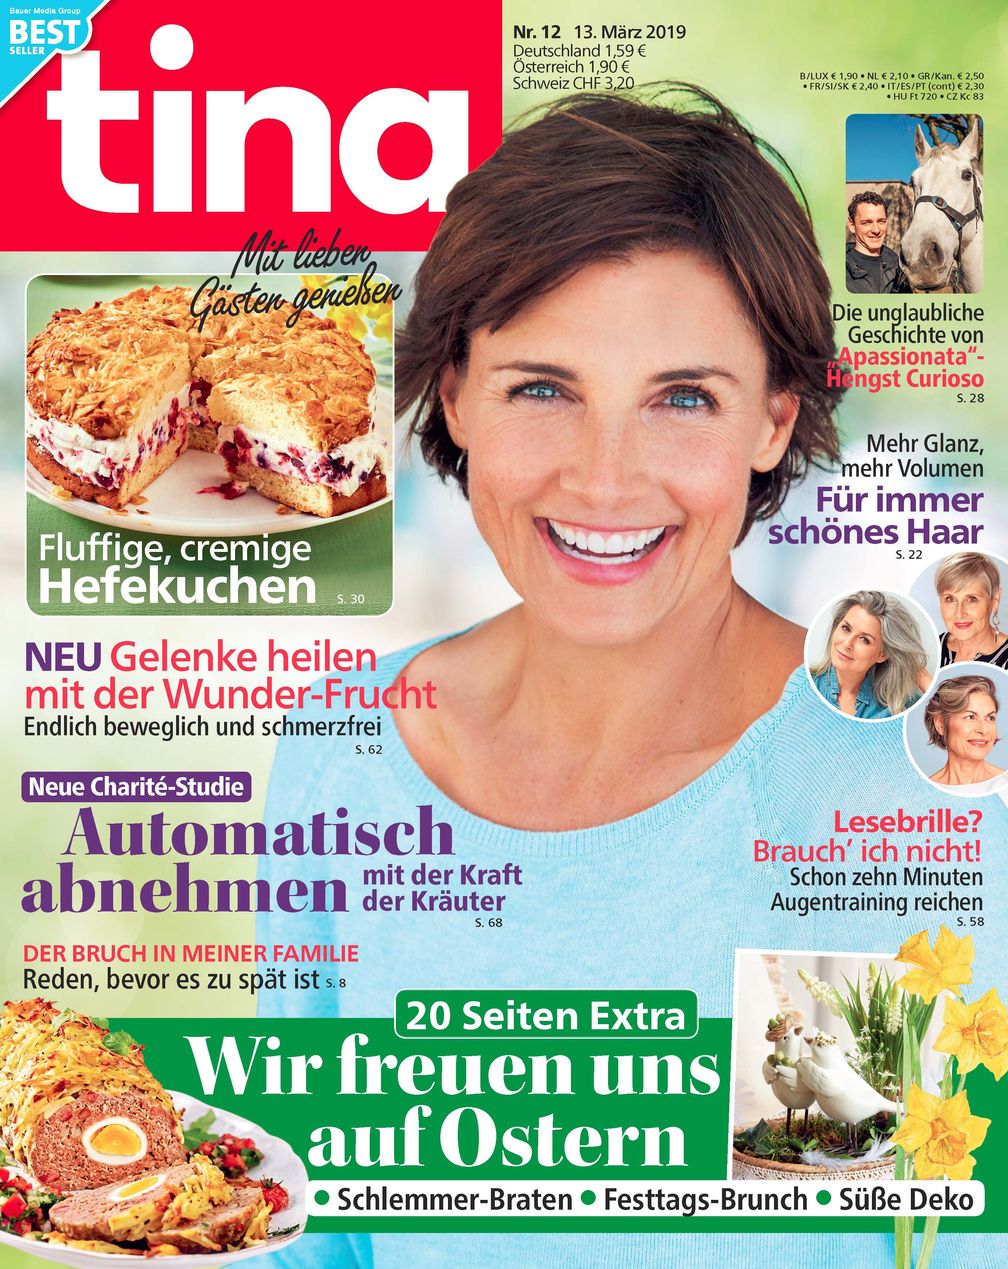 Cover_tina_#12/19 / Bild: "obs/Bauer Media Group, tina"